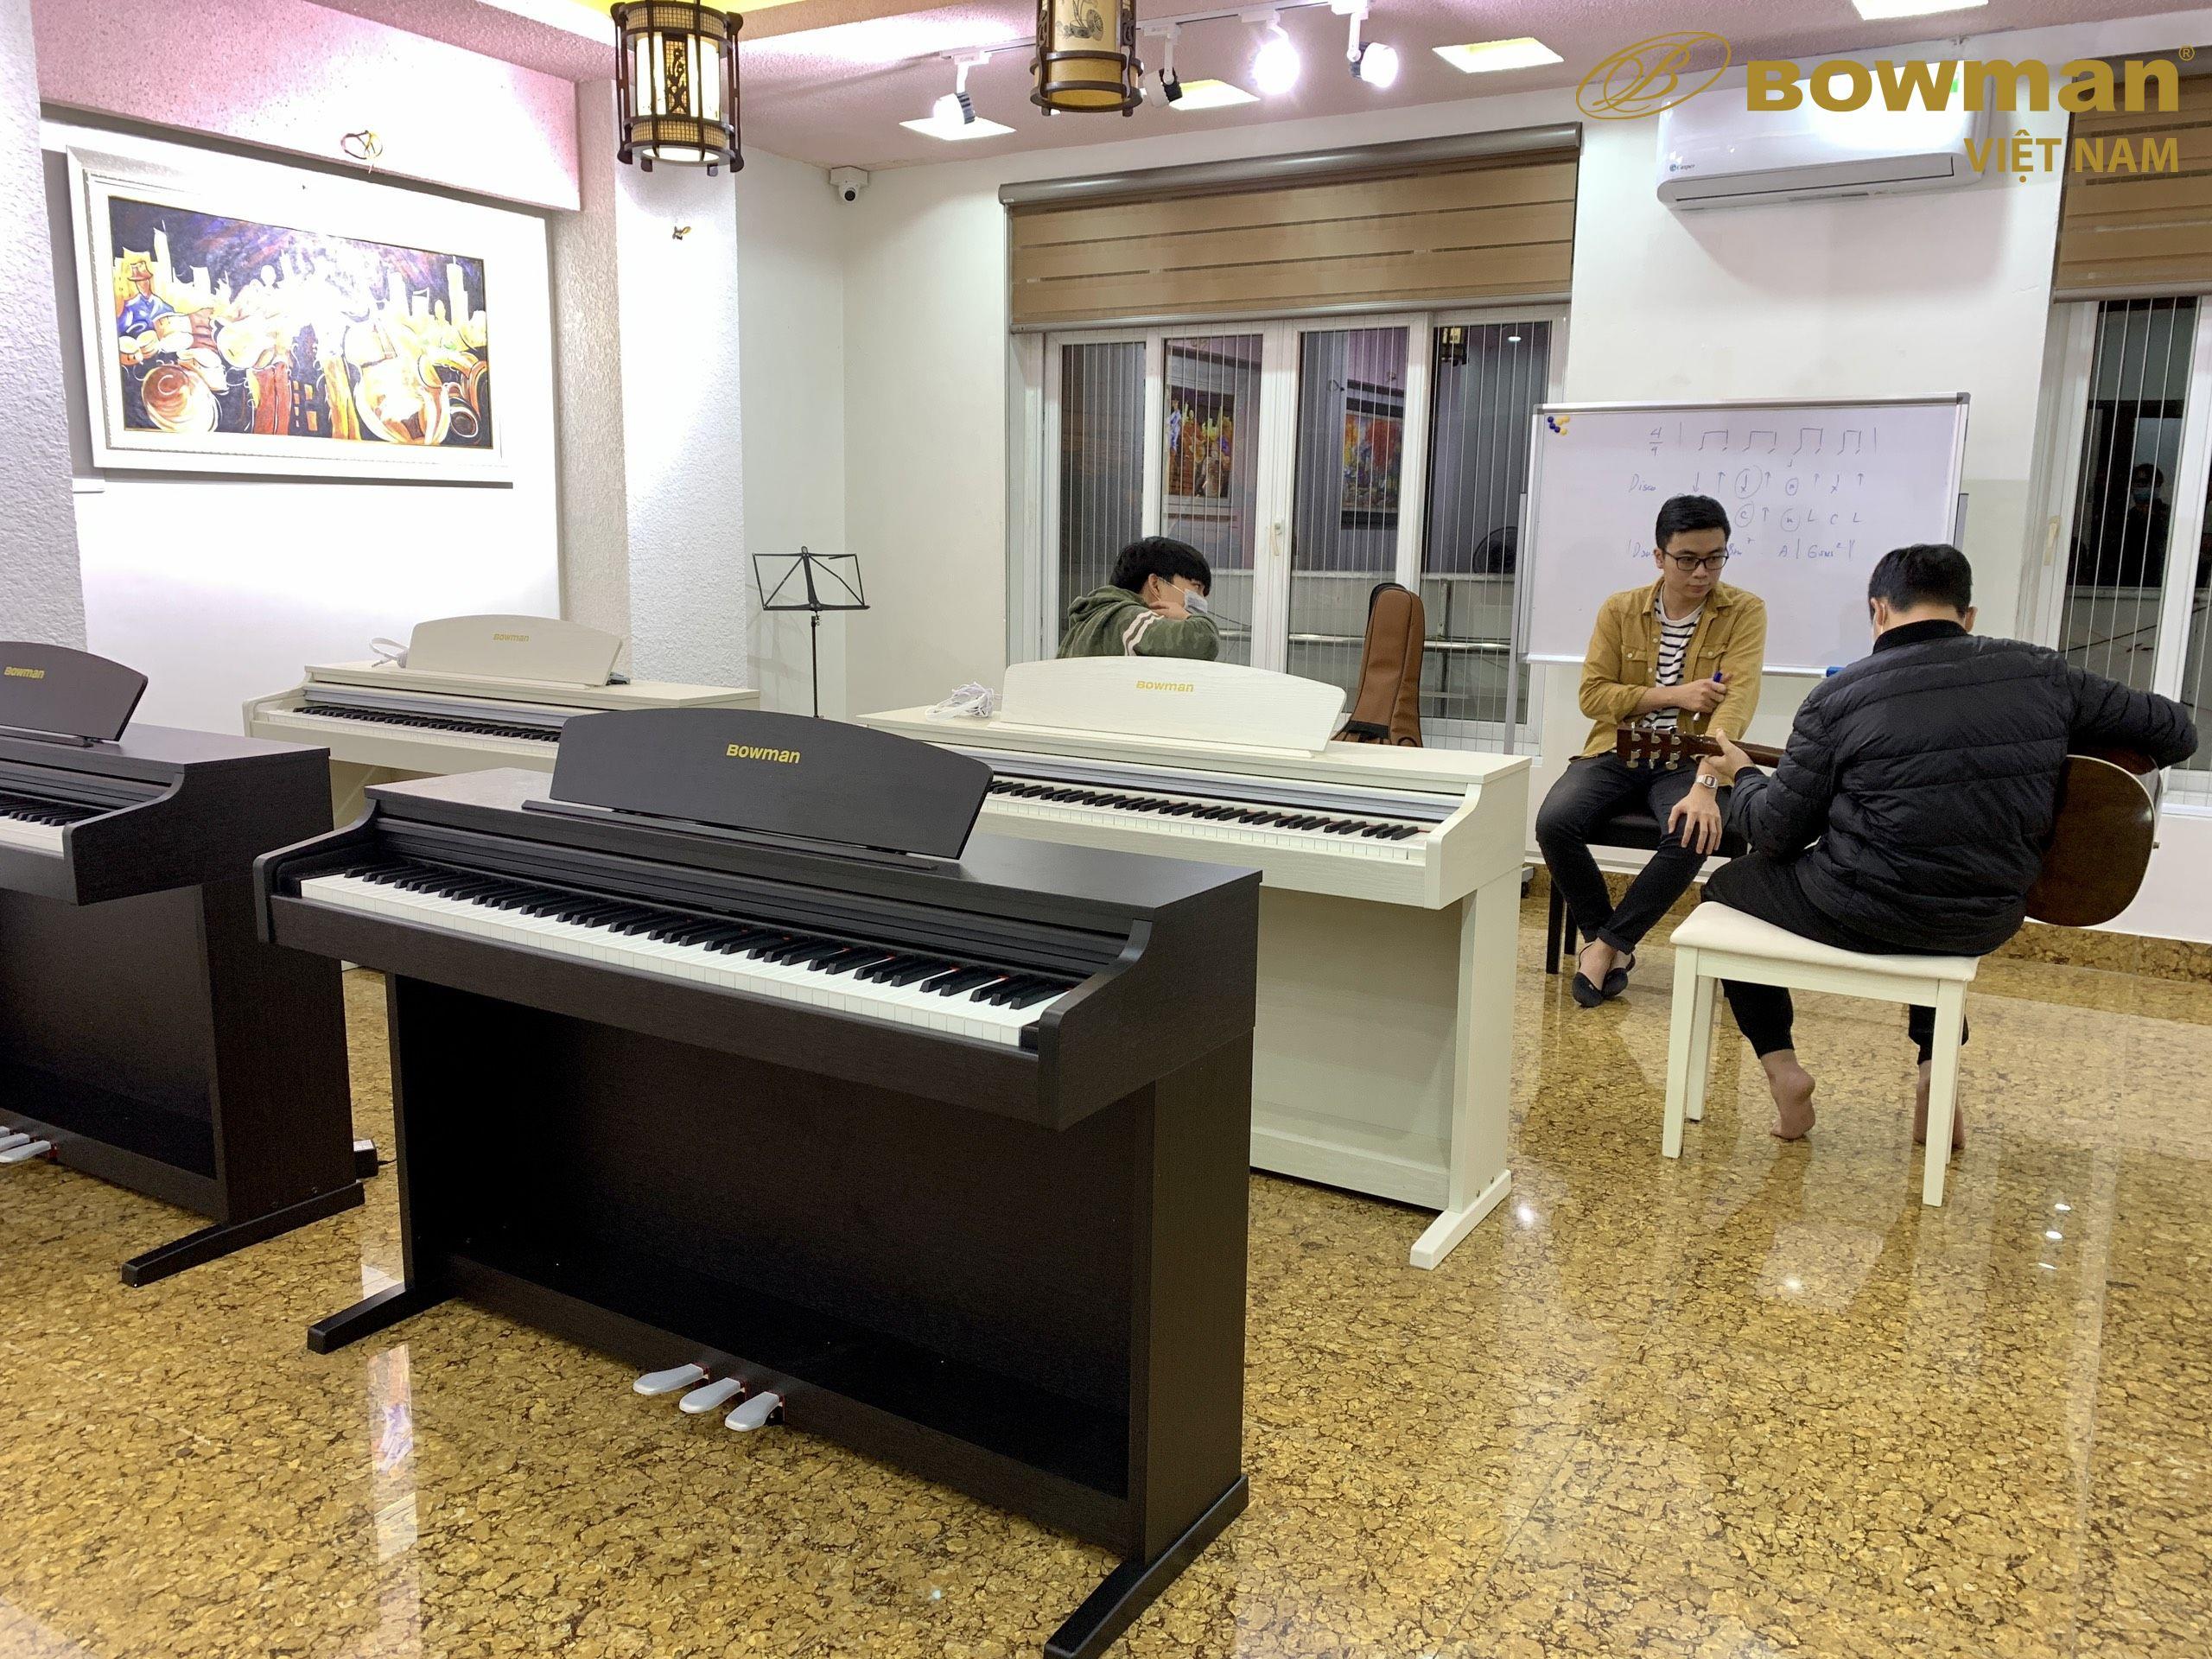 Bowman PIANO được sử dụng trong nhiều trung tâm âm nhạc